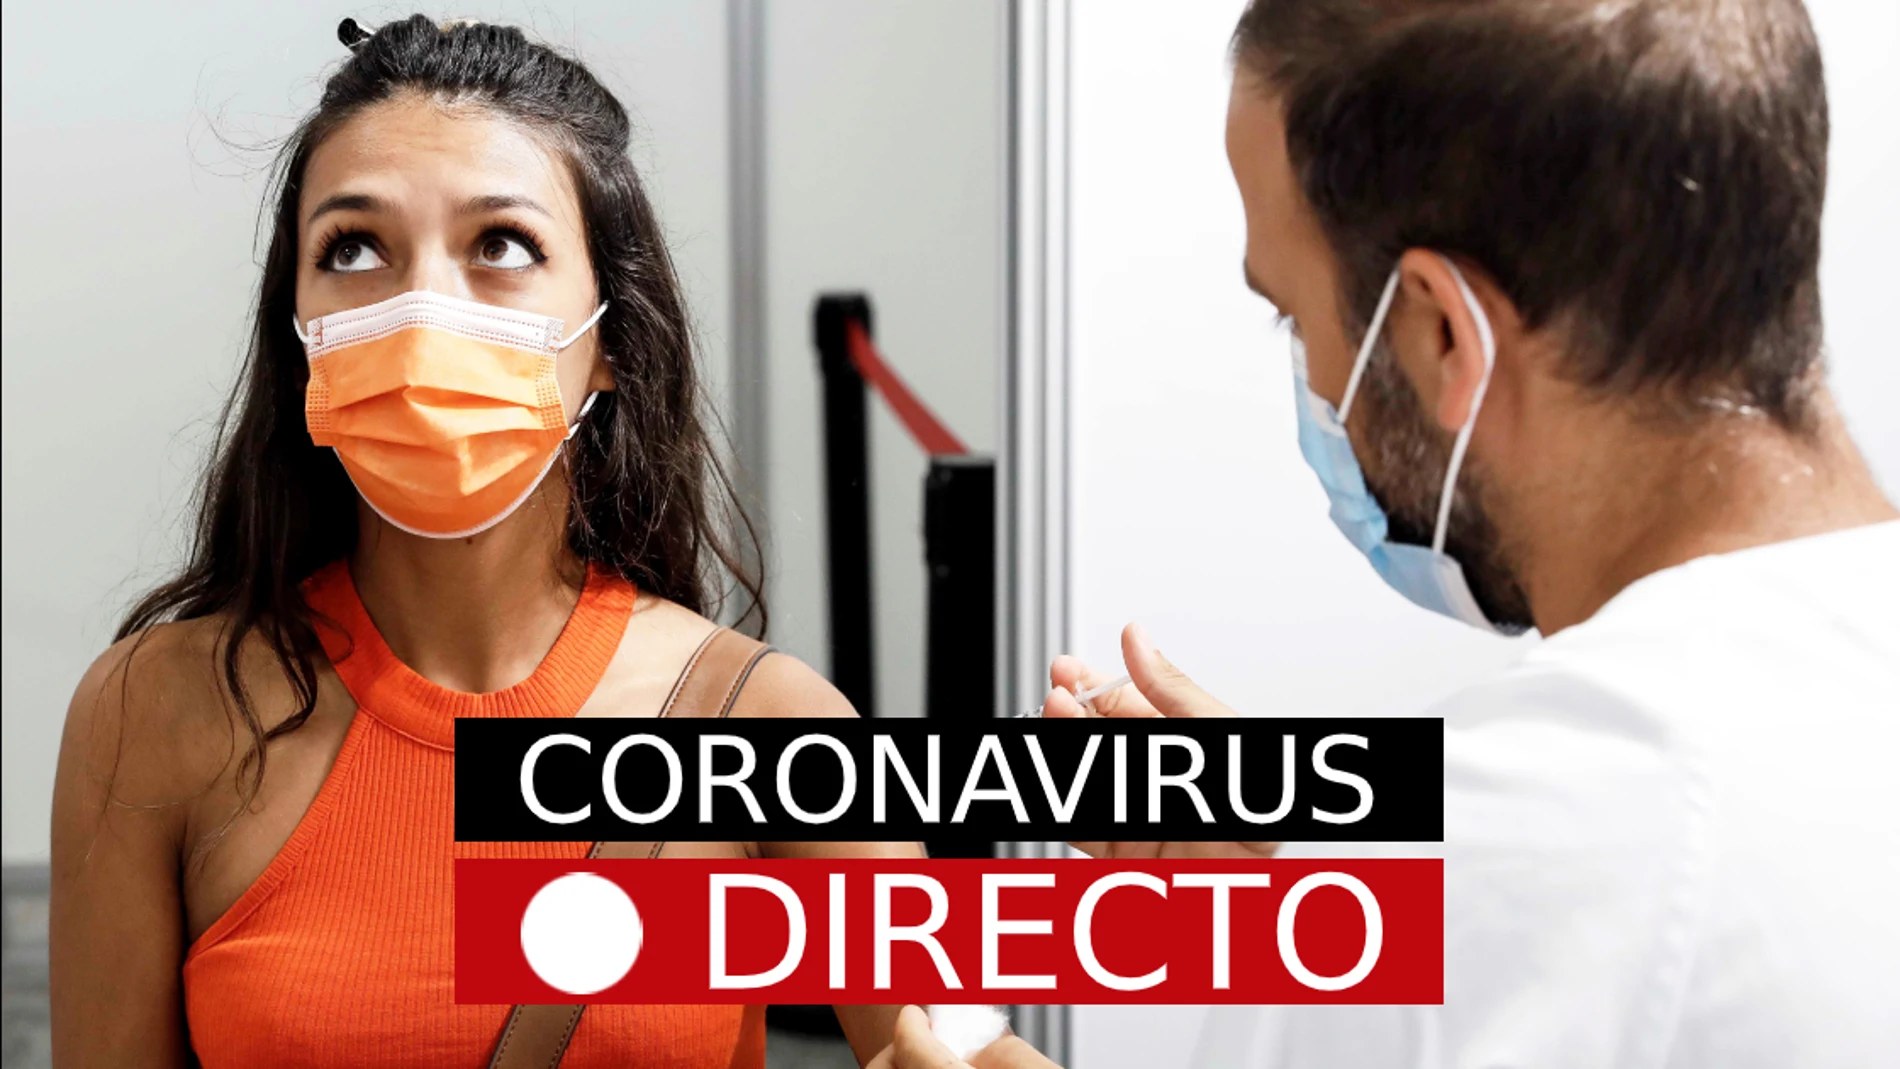 Última hora de coronavirus, hoy: vacuna de Covid-19, certificado y medidas en España